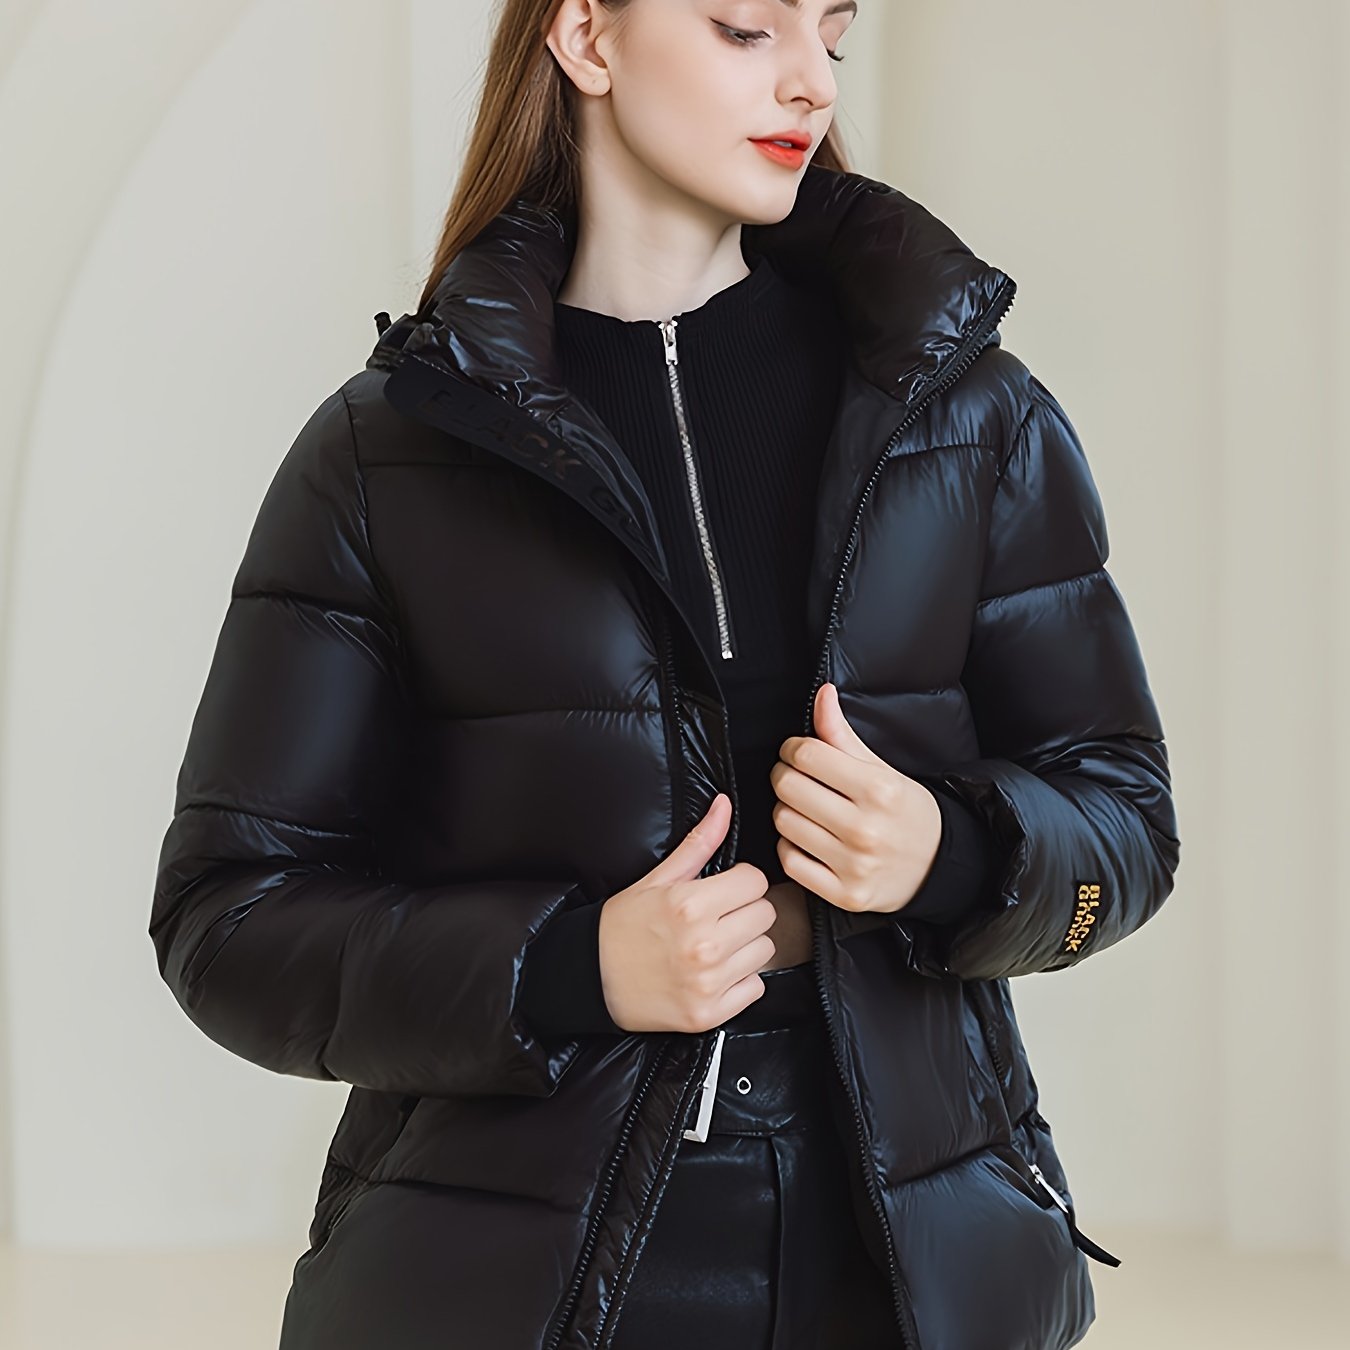 Vzyzv Solid Zipper Front Hooded Coat, Versatile Long Sleeve Warm Winter Outwear, Women's Clothing